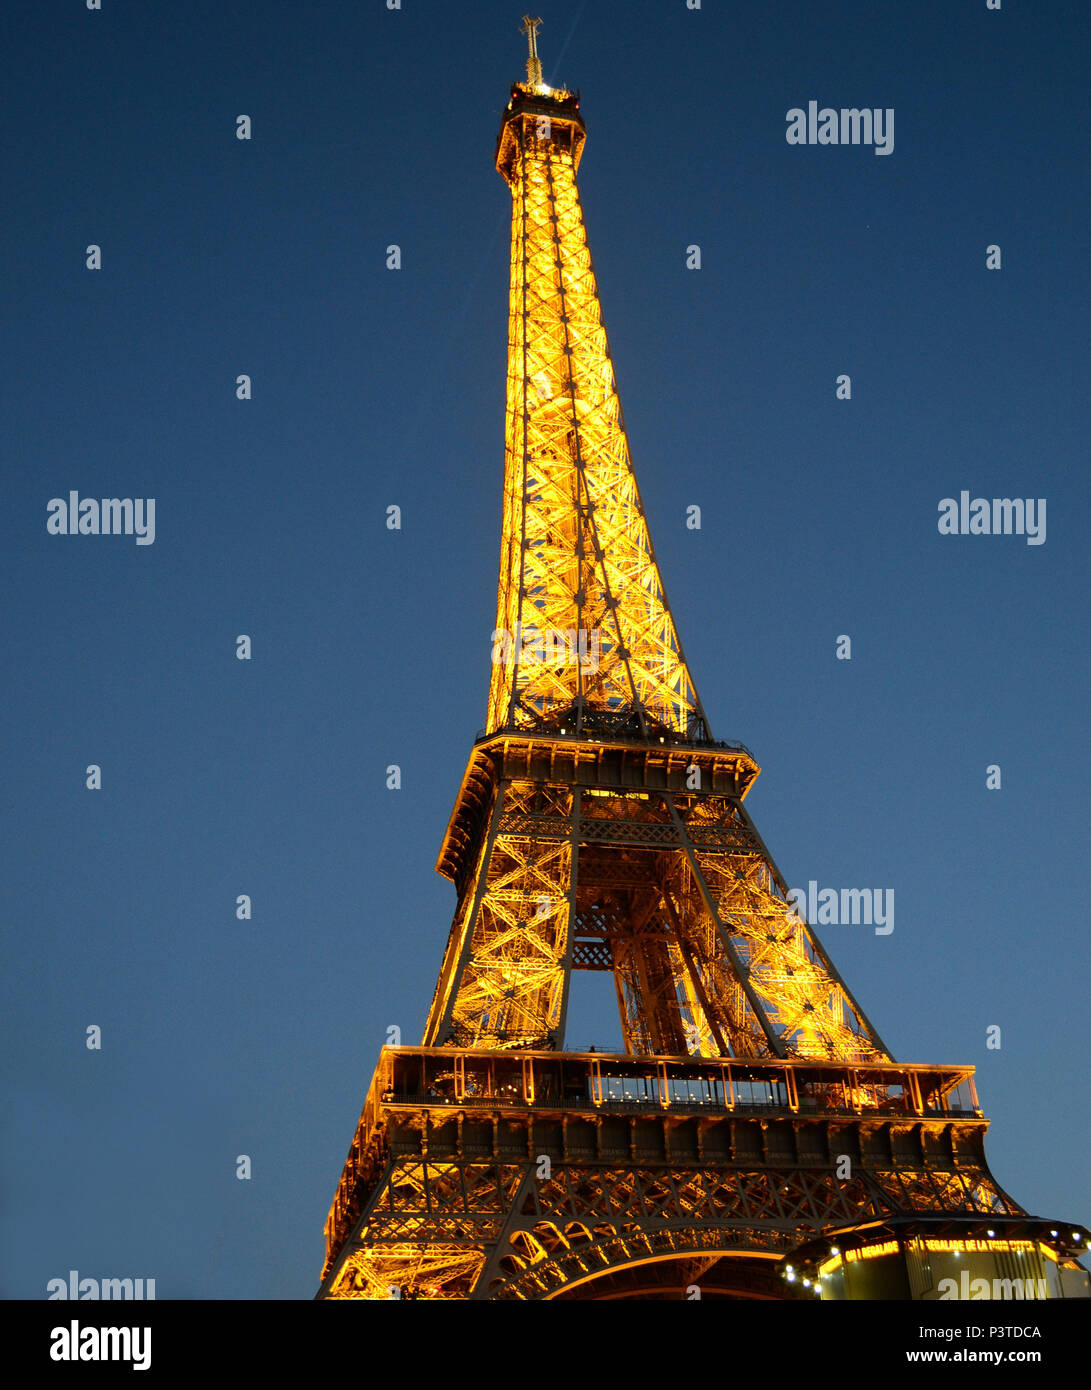 PARIS, FRANÇA - 16.10.2013: PARIS - Vista da Torre Eiffel iluminada no início da noite. (Foto: Fontana / Fotoarena) Stock Photo